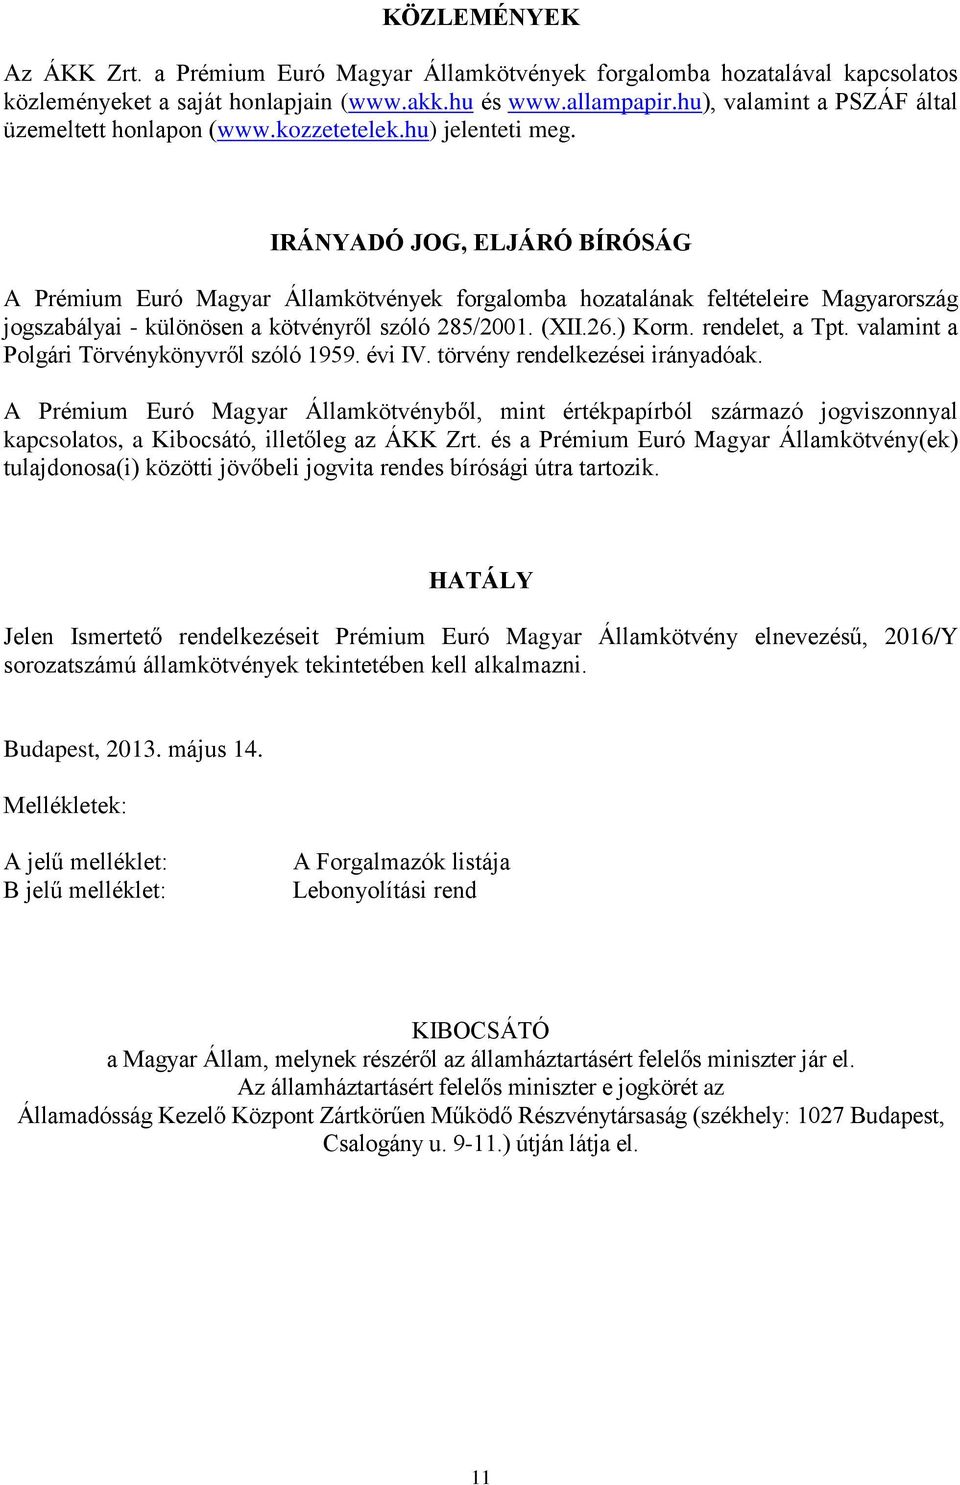 IRÁNYADÓ JOG, ELJÁRÓ BÍRÓSÁG A Prémium Euró Magyar Államkötvények forgalomba hozatalának feltételeire Magyarország jogszabályai - különösen a kötvényről szóló 285/2001. (XII.26.) Korm.